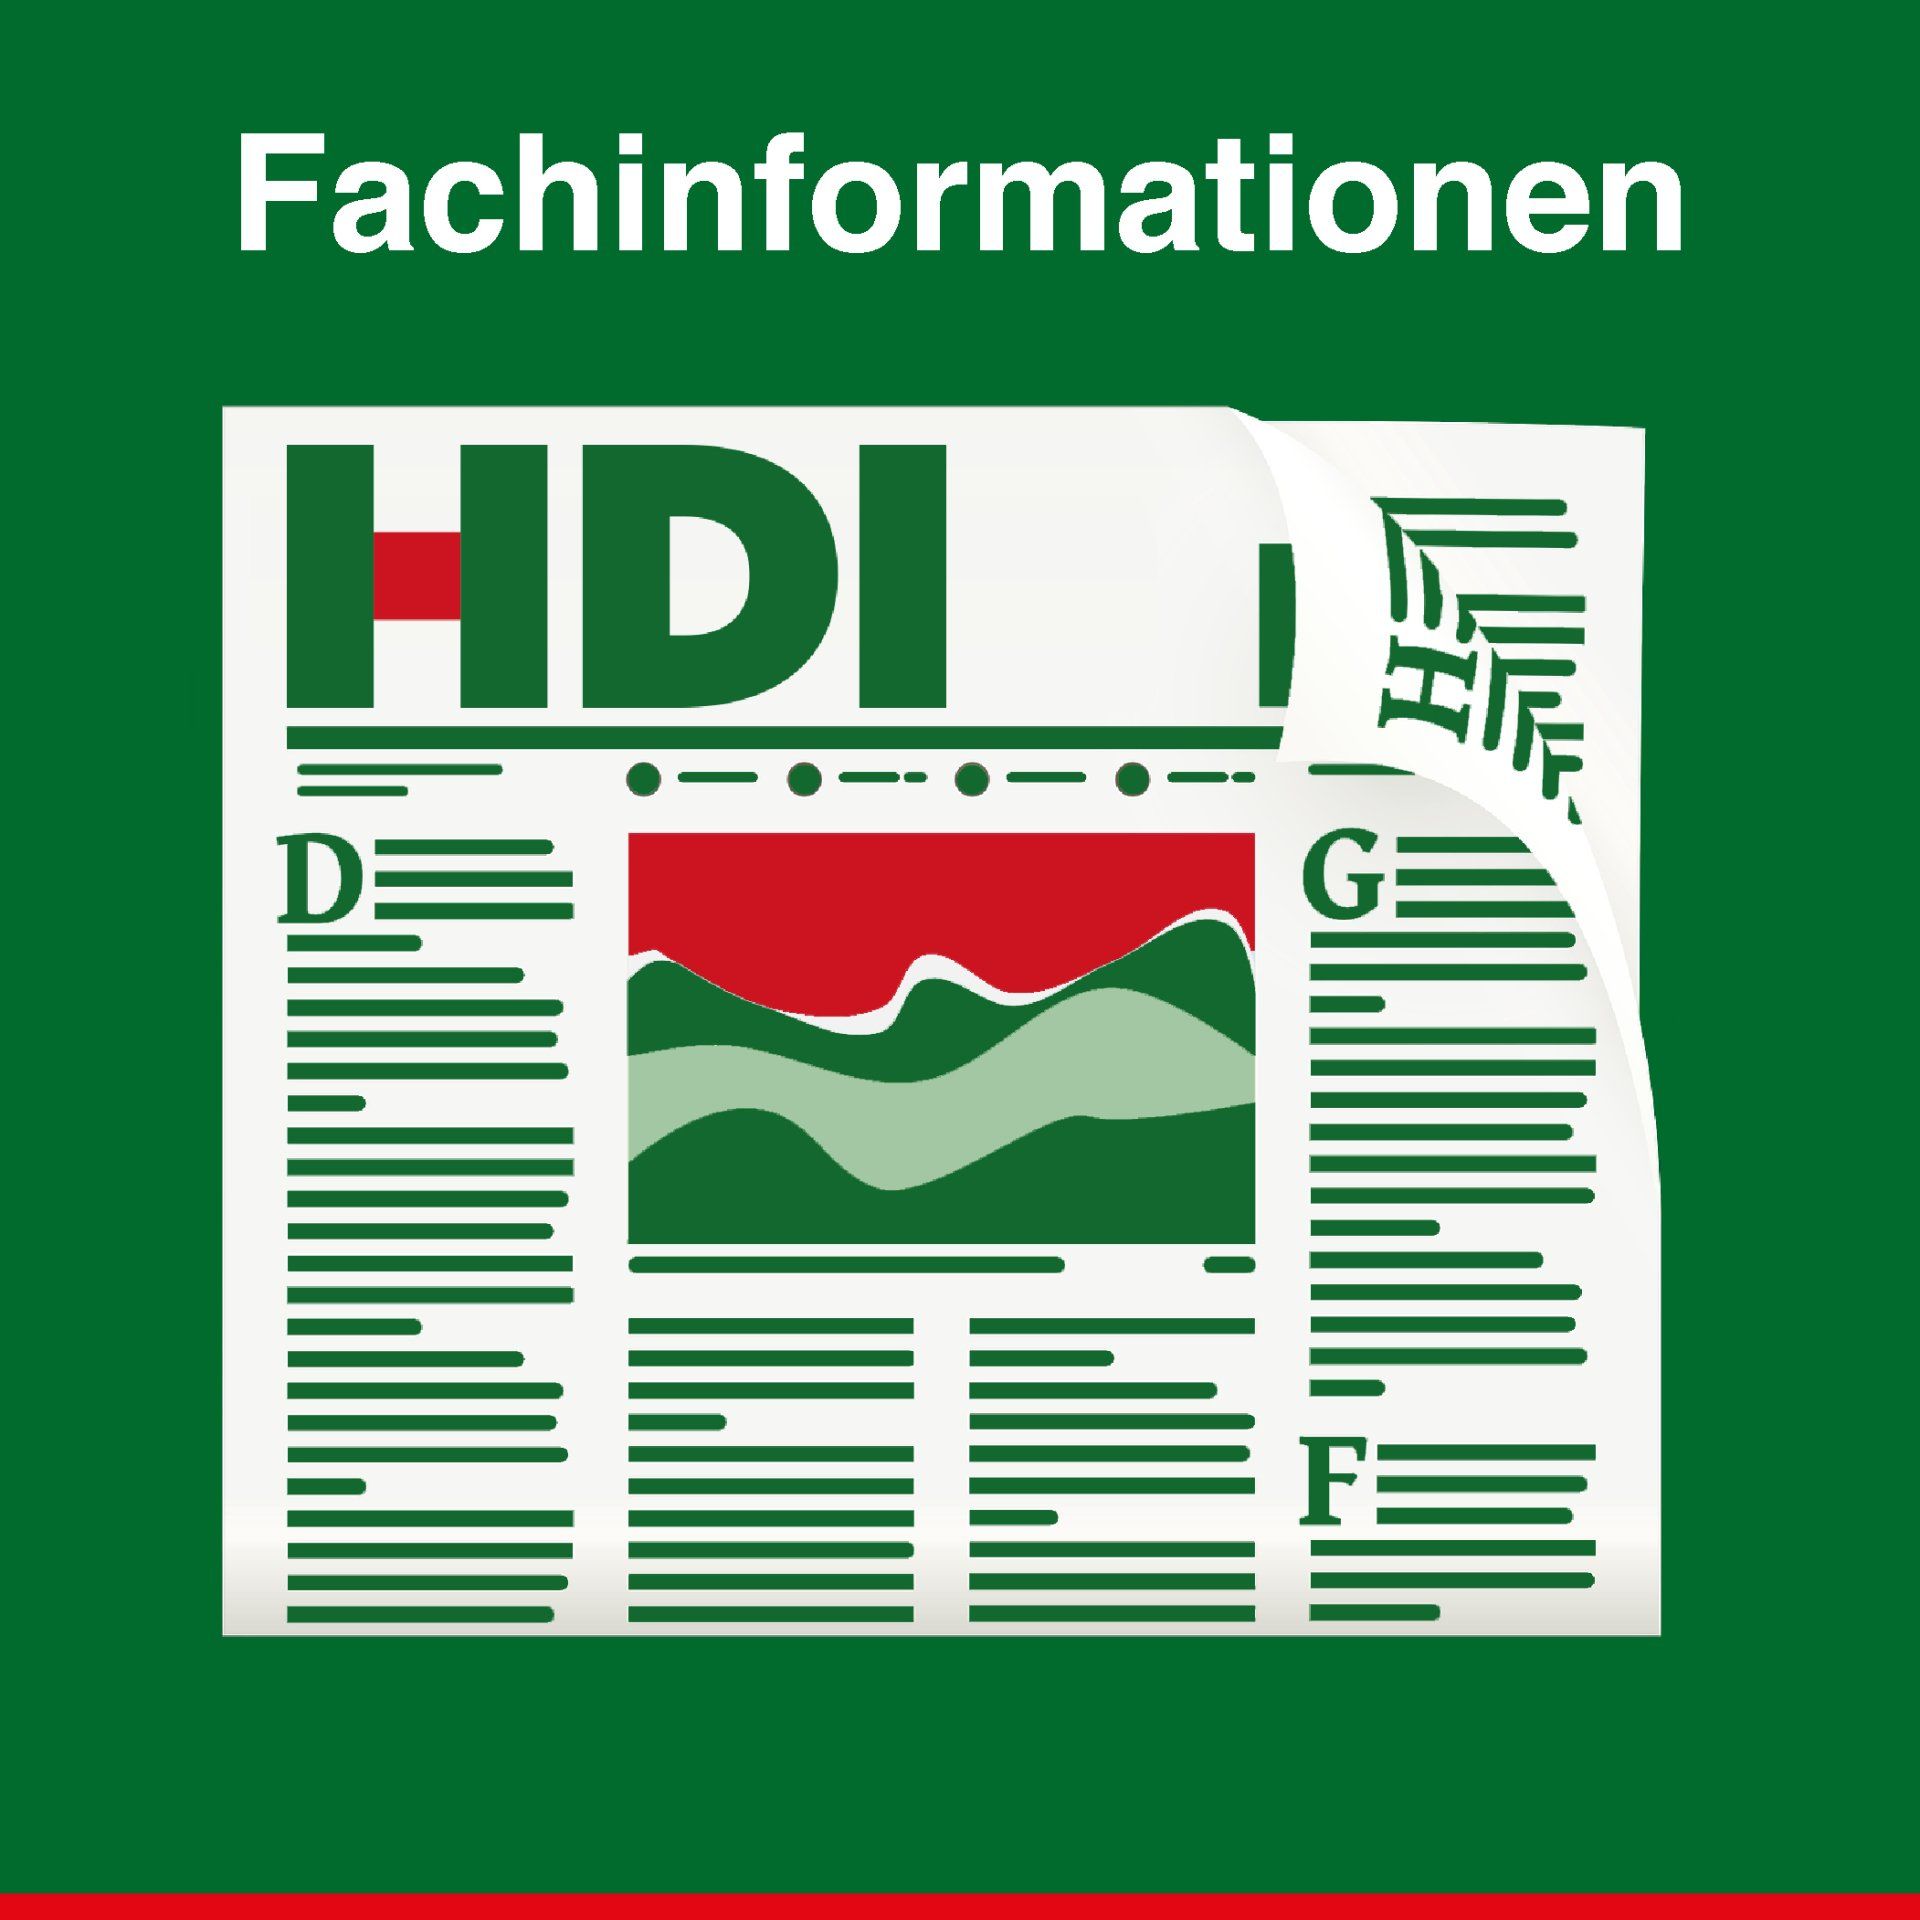 2-serve HDI Osnabrück Fachinformationen REG IG Letter GI Aktuell HDI Berater